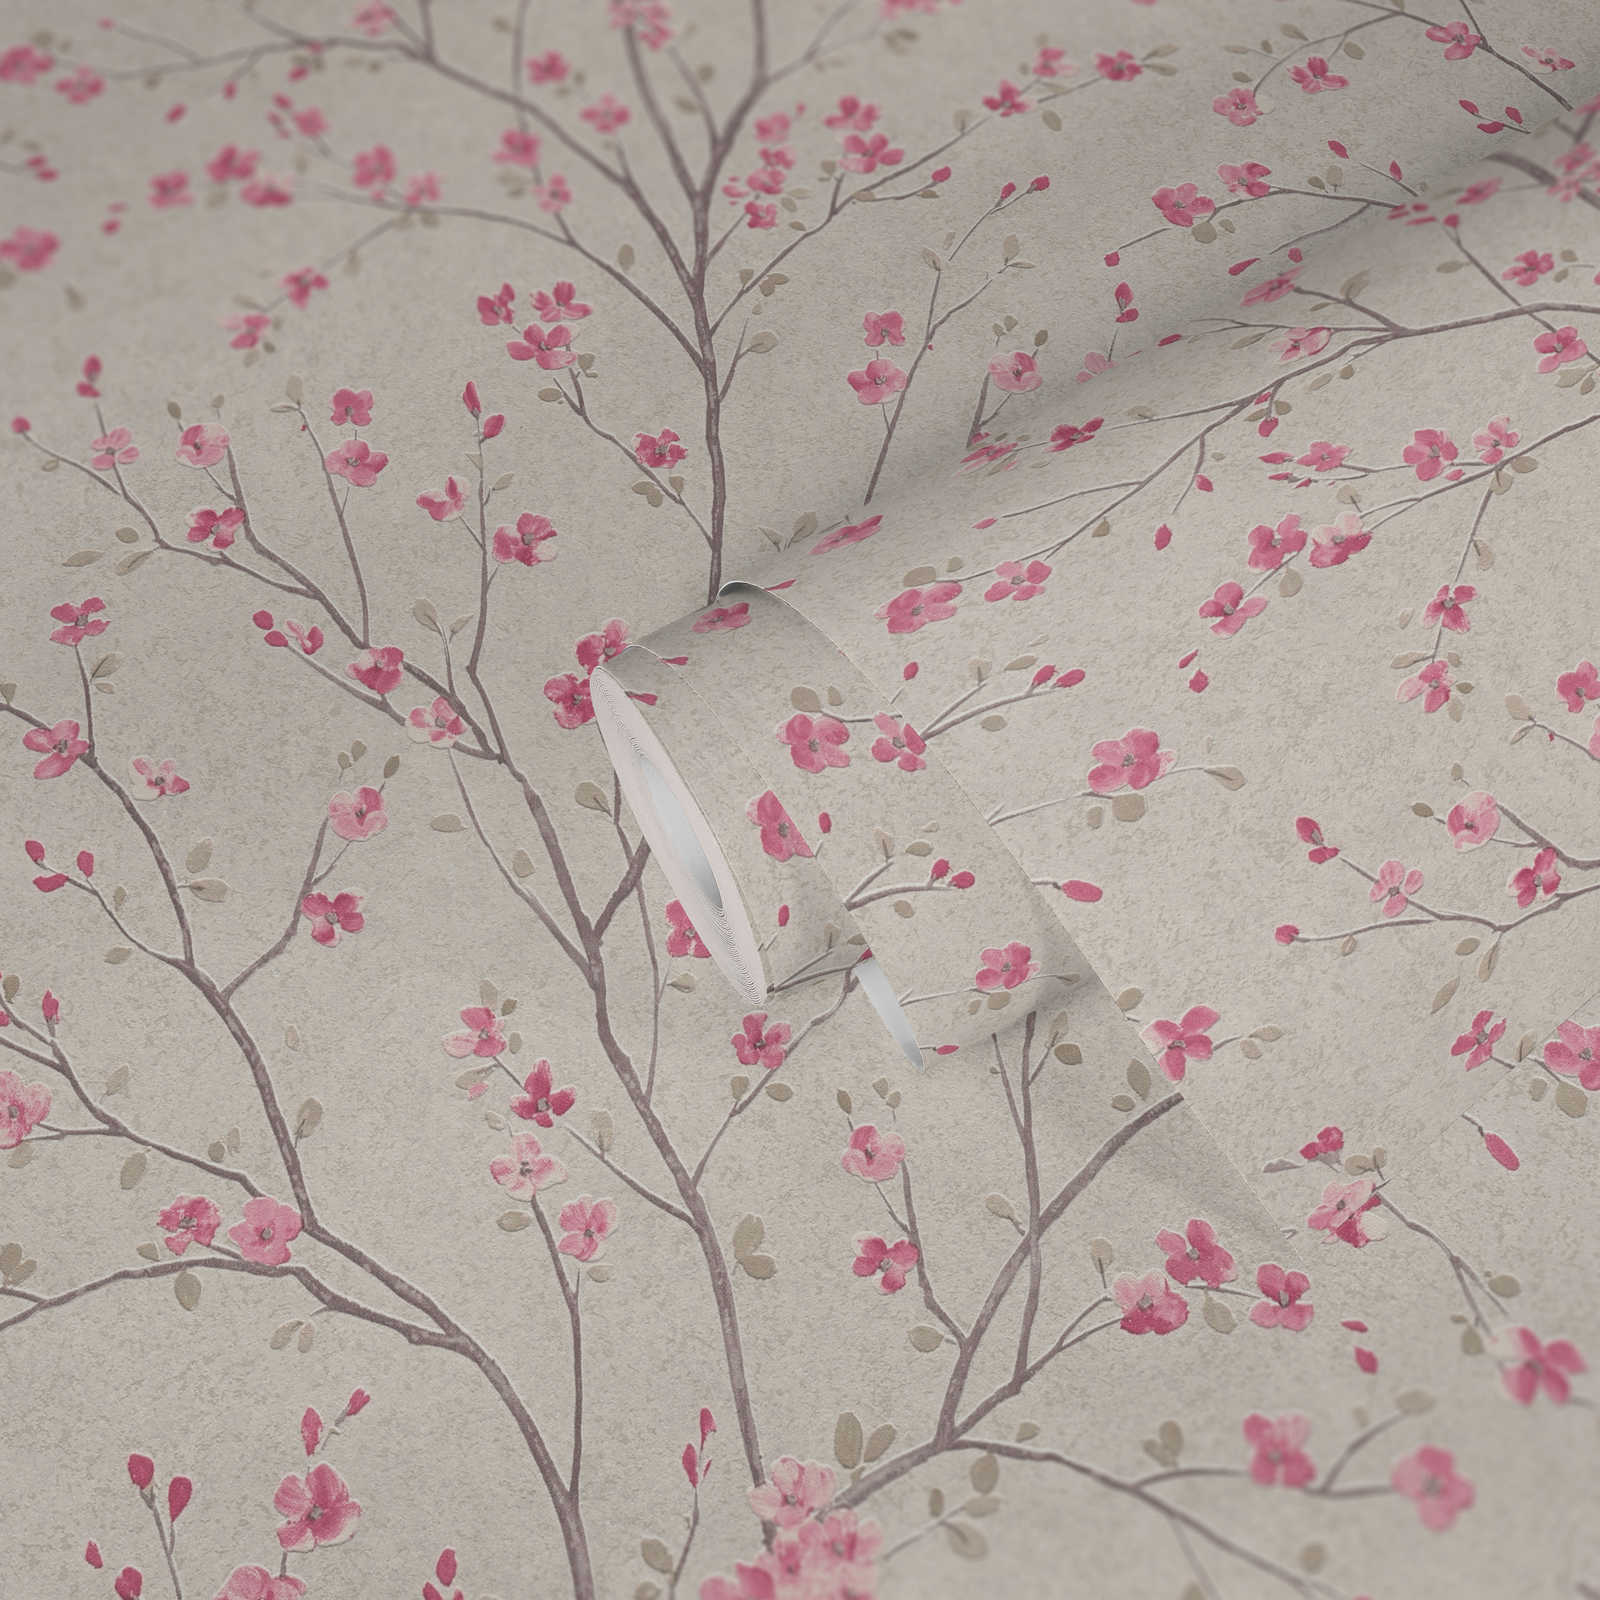             Carta da parati in tessuto non tessuto con disegno di fiori di ciliegio in stile asiatico - marrone, rosa, bianco
        